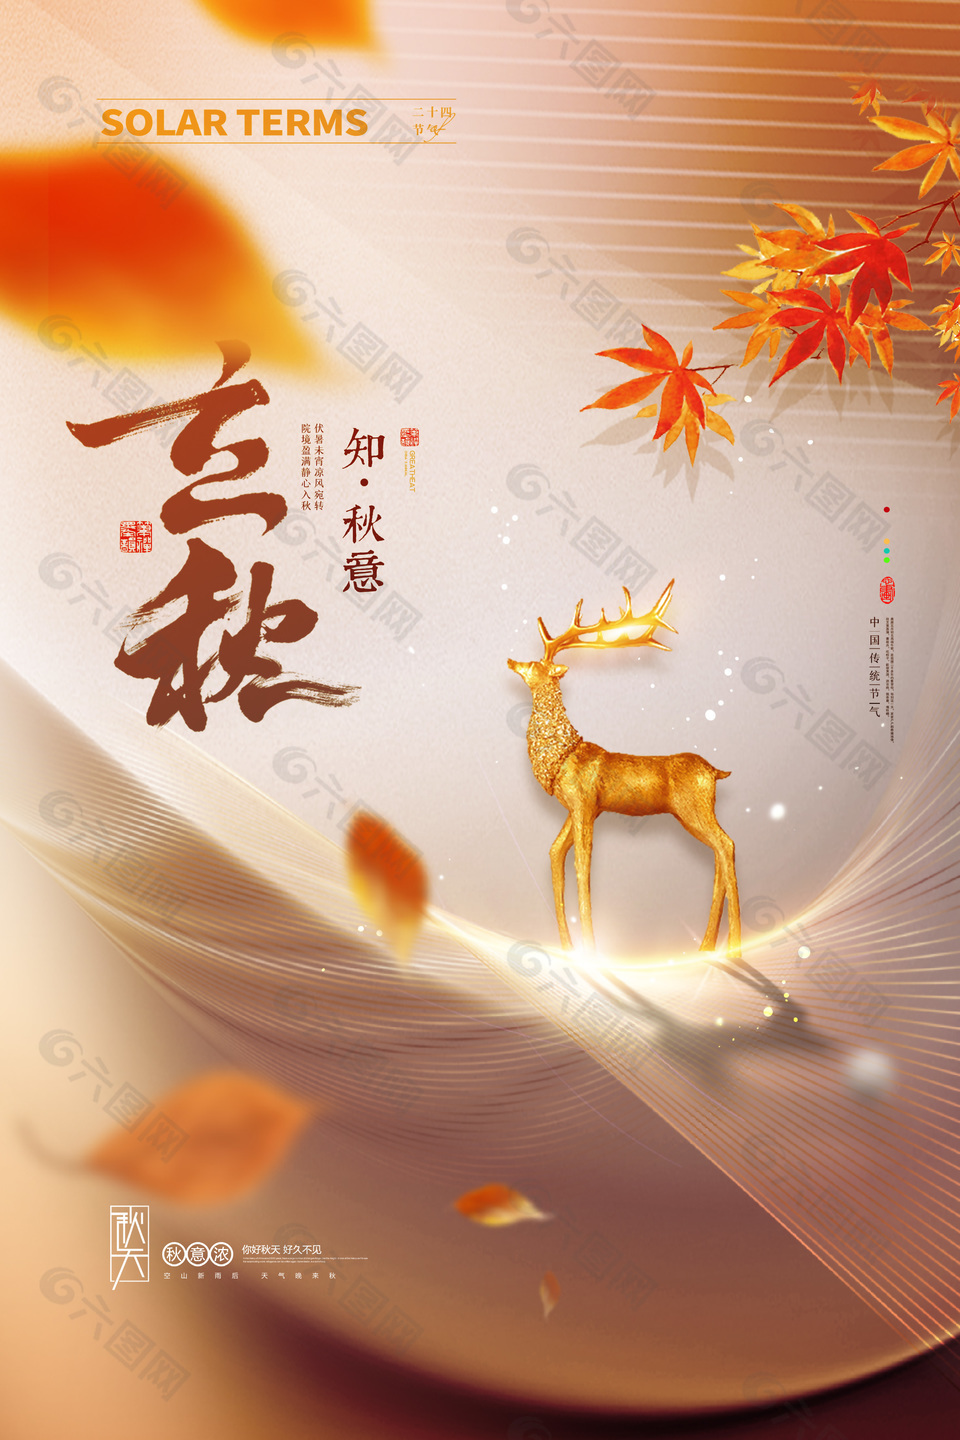 中国传统节气之立秋广告宣传海报图片下载